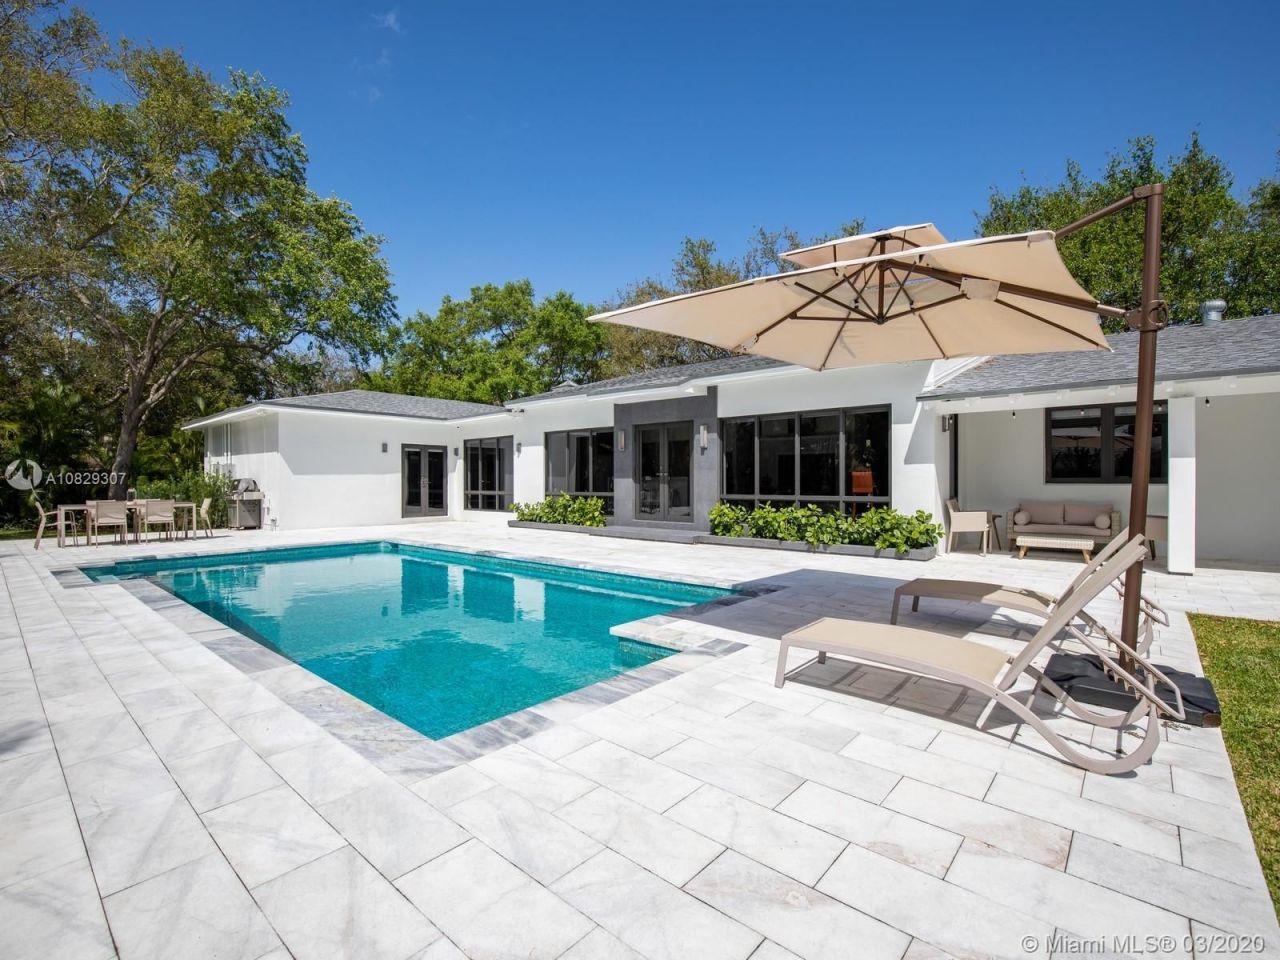 Villa en Miami, Estados Unidos, 300 m² - imagen 1